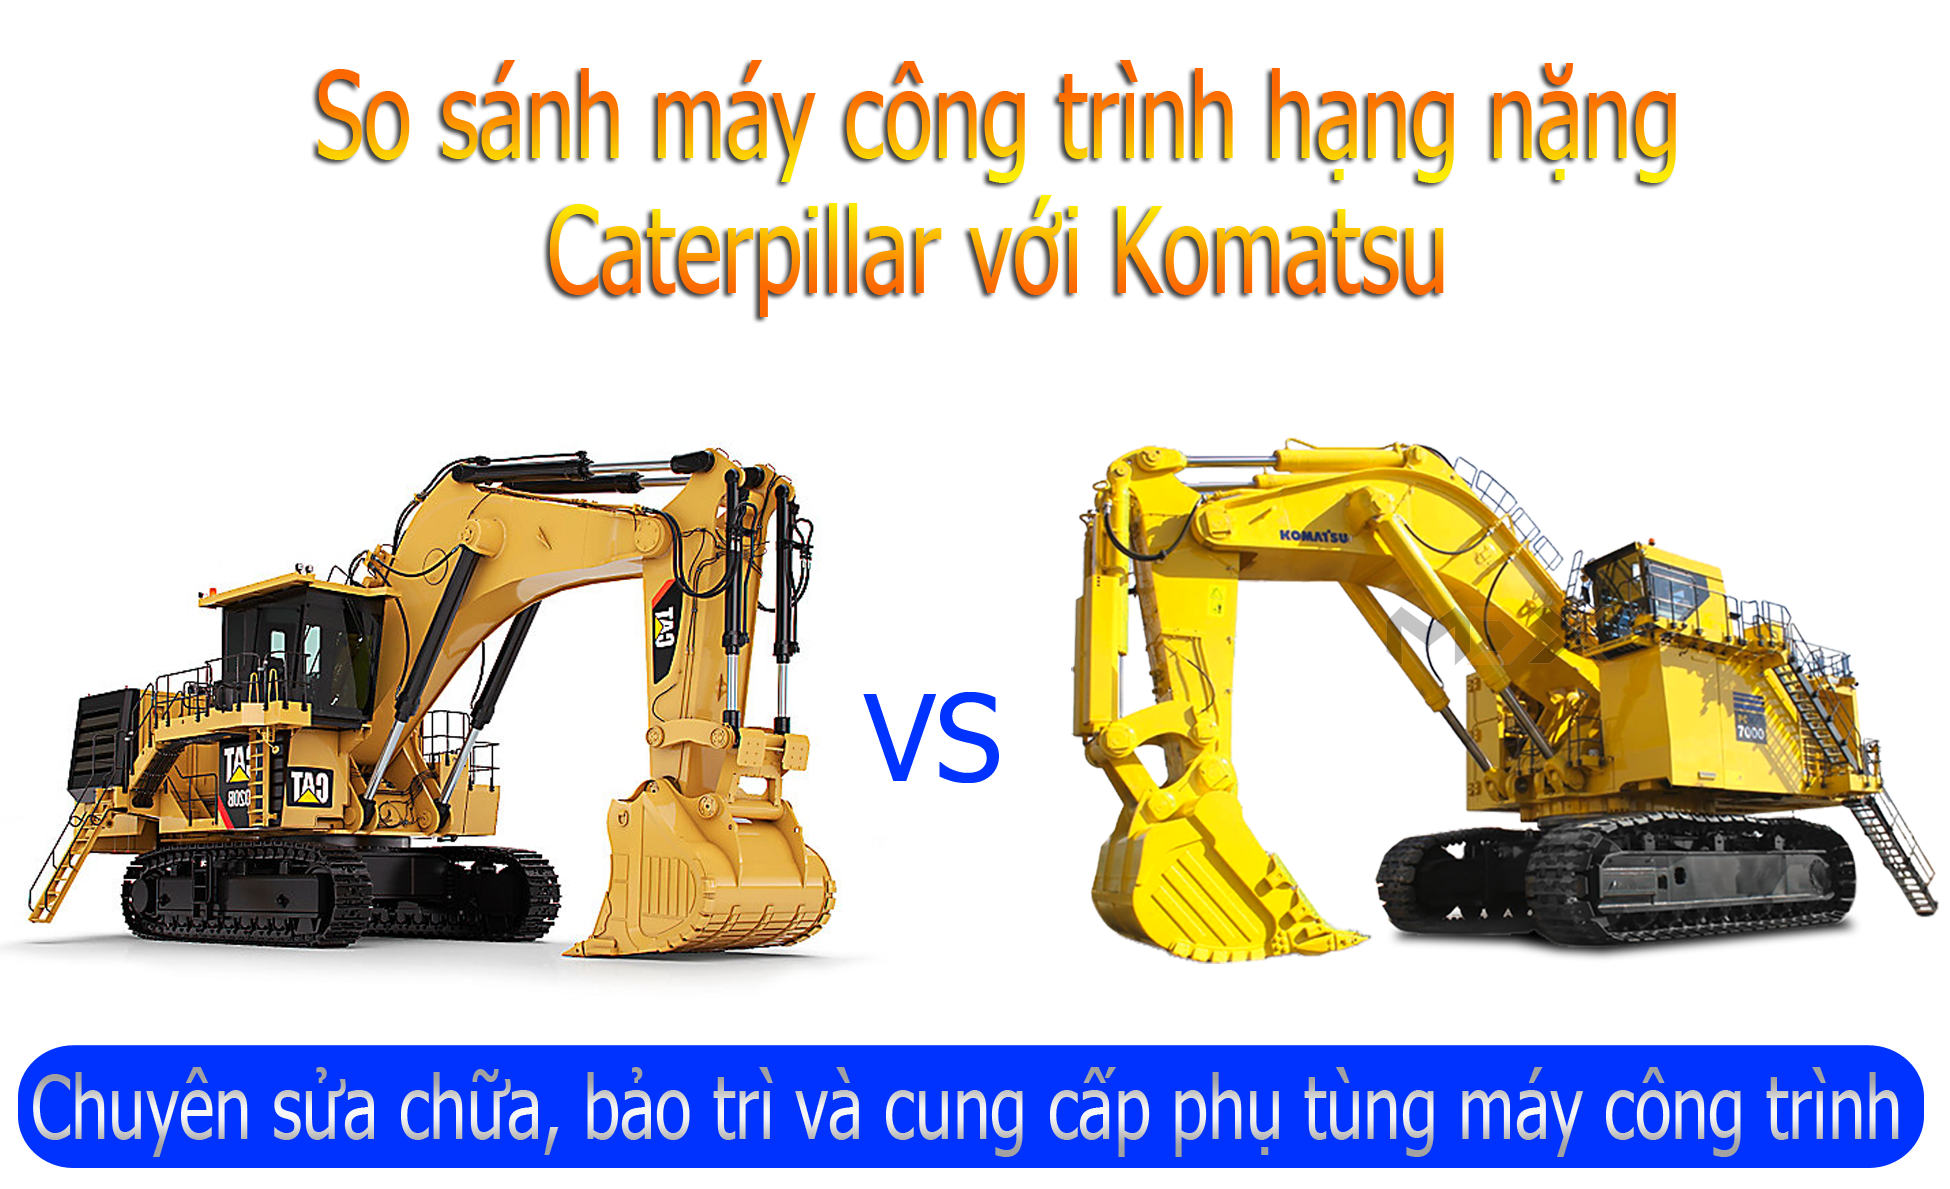 So sánh máy xúc Komatsu và Caterpillar, những tiêu chí lựa chọn máy phù hợp cho từng công trình